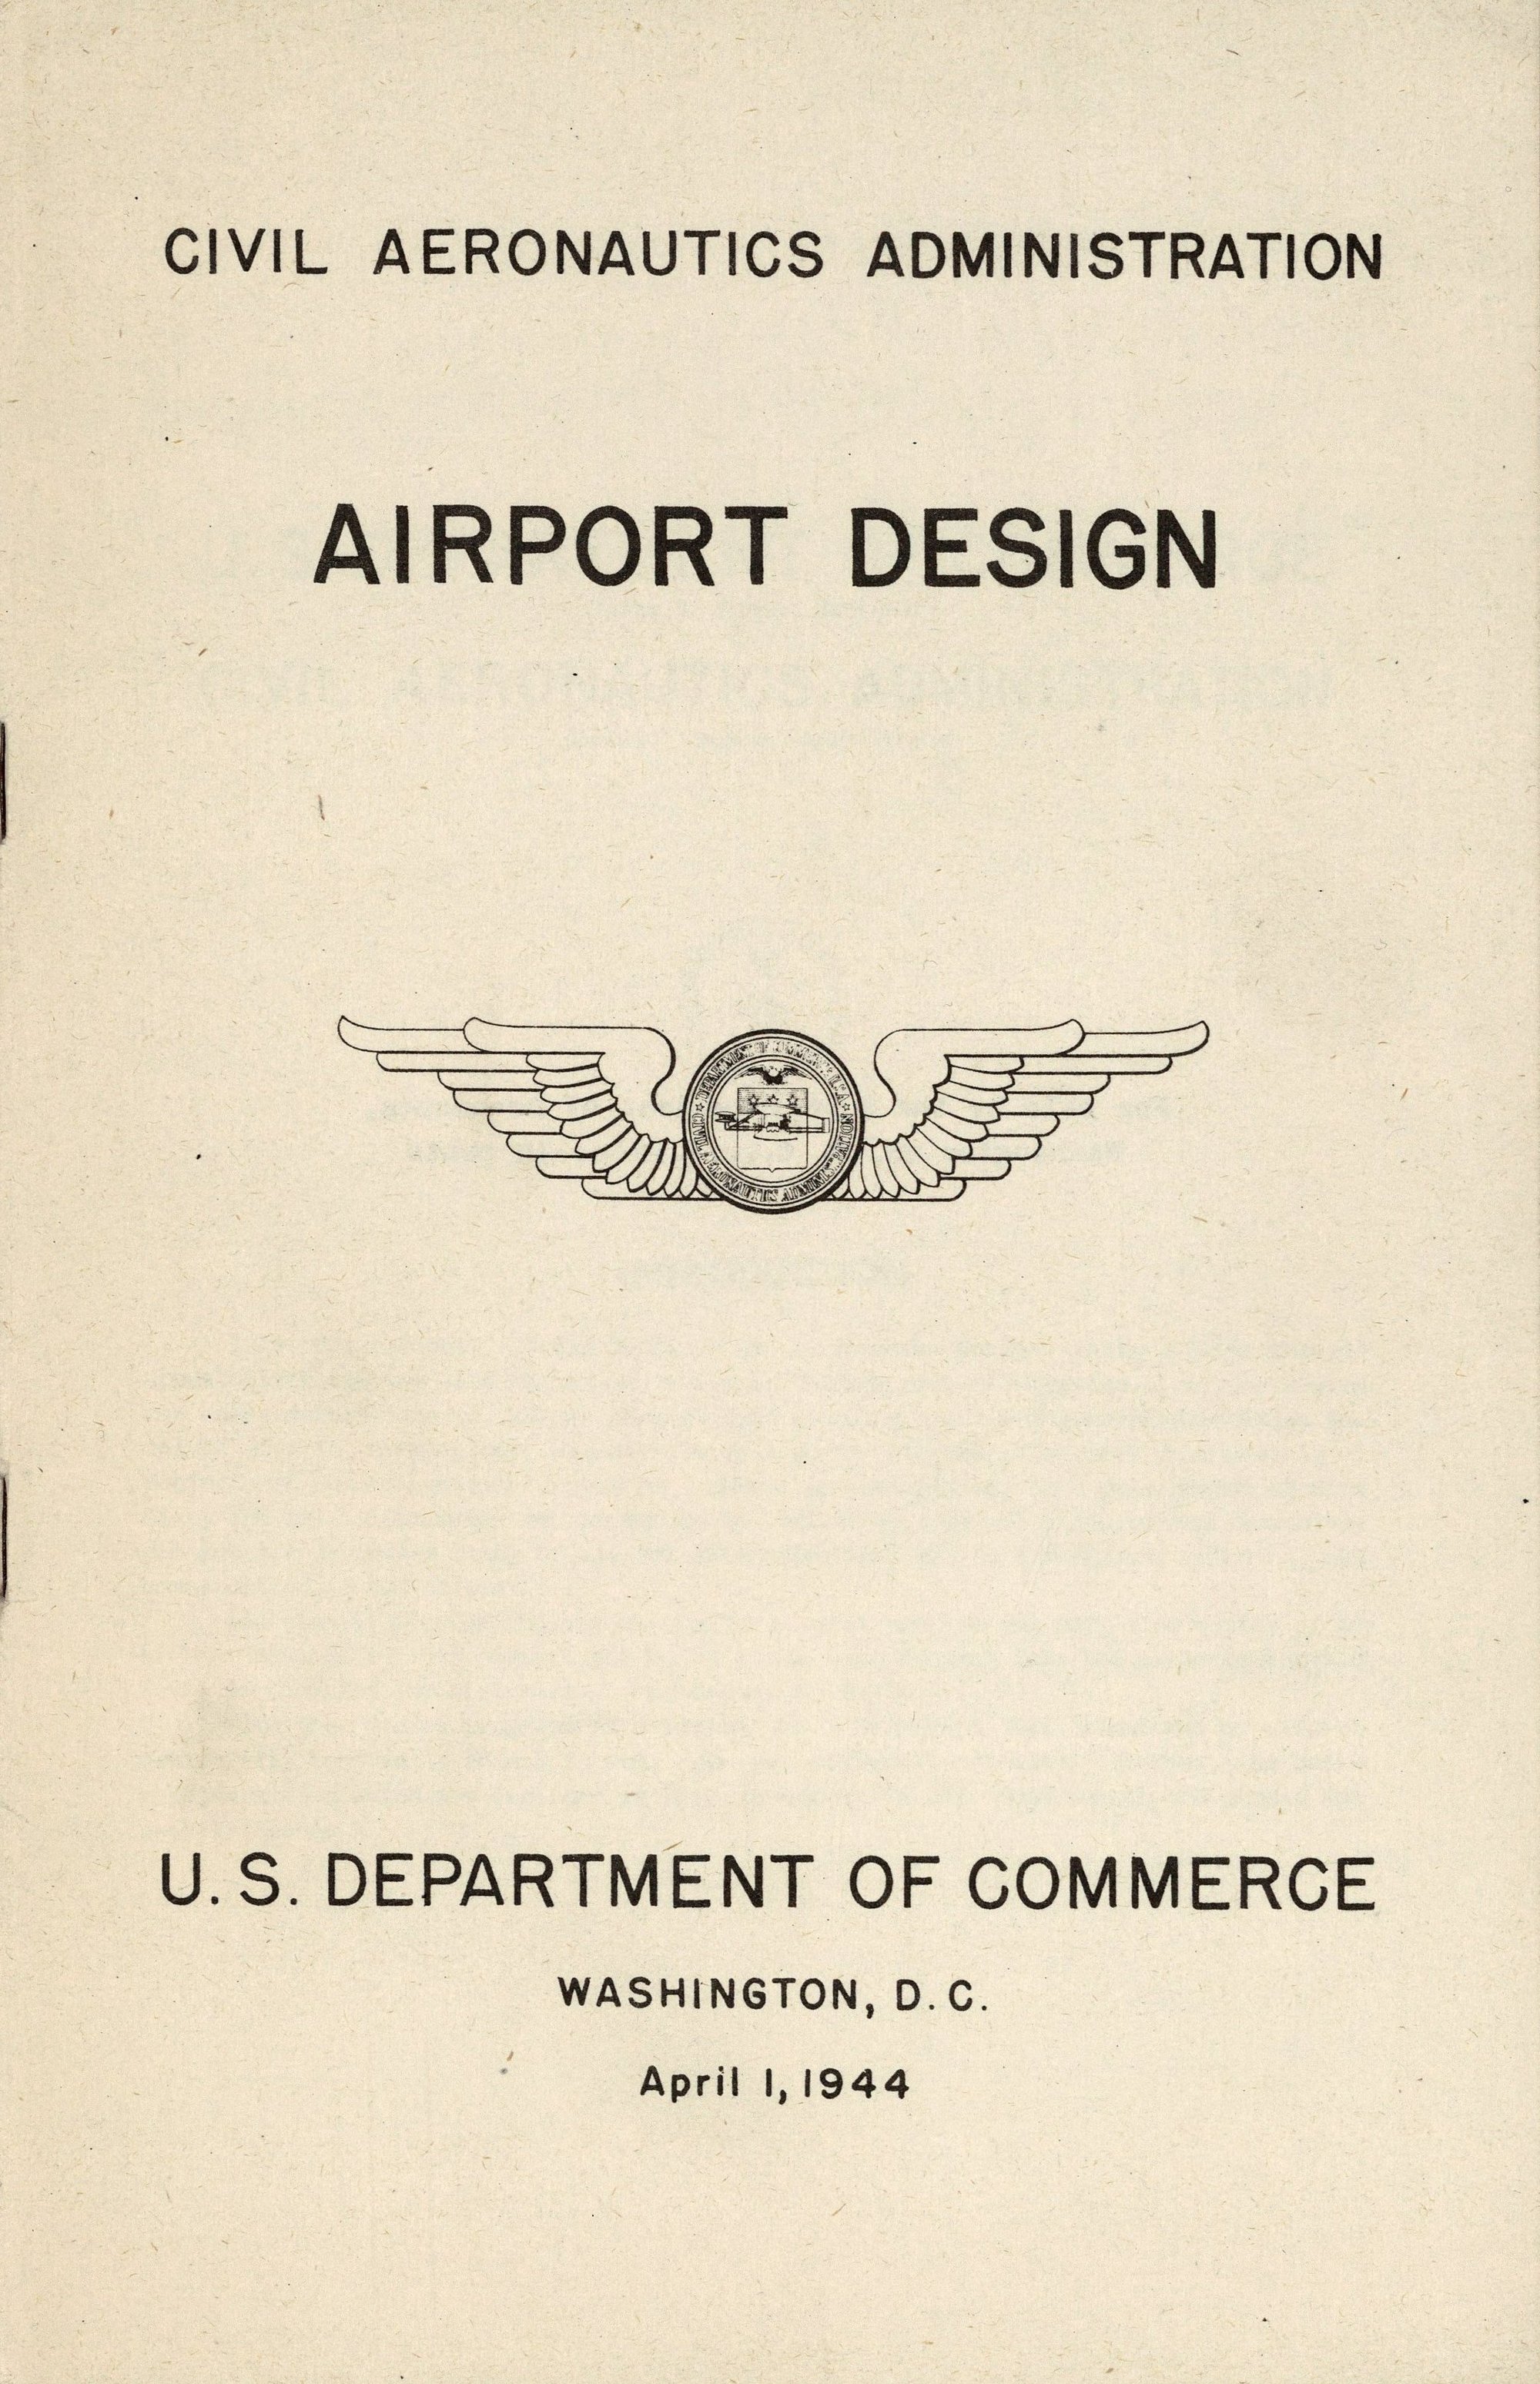 Airport Design / Civil Aeronautics Administration. — Washington, D. C. : U. S. Department of Commerce, 1944